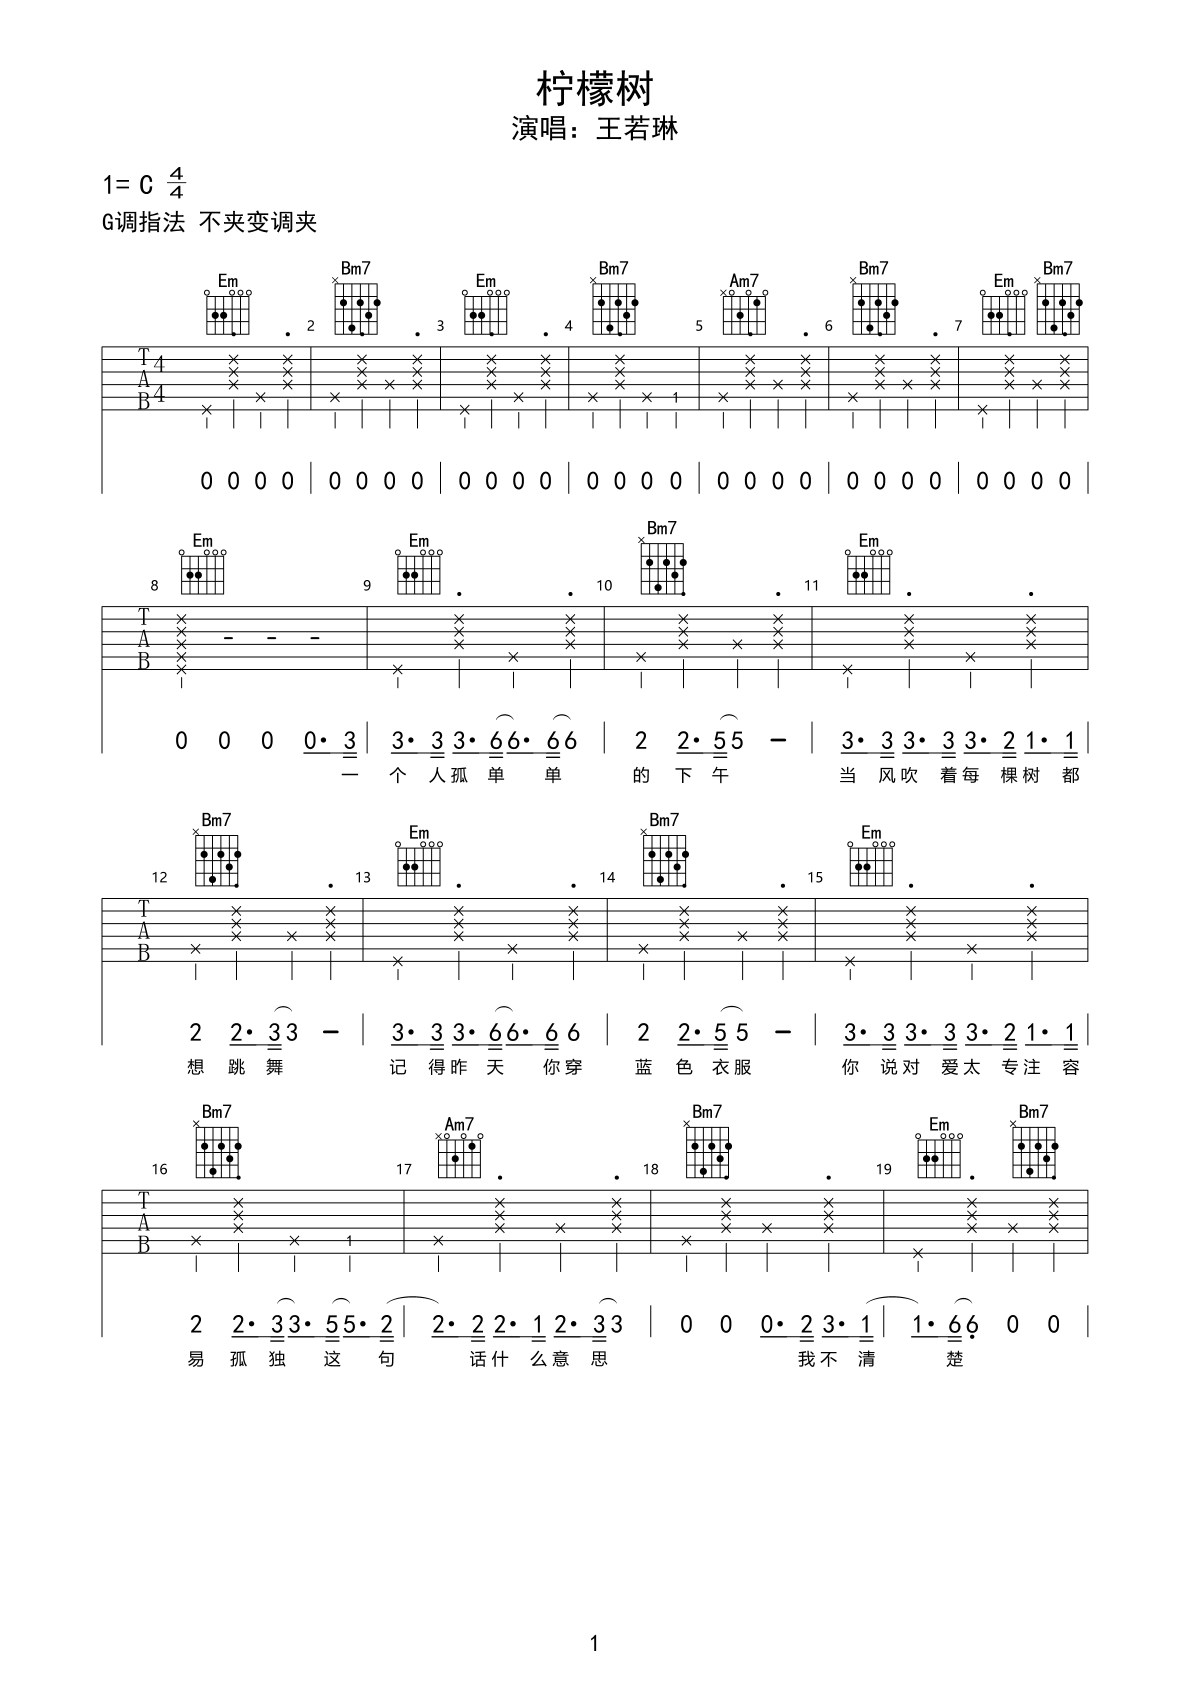 英文吉他名曲《Lemon Tree 柠檬树》傻瓜花园-吉他曲谱 - 乐器学习网